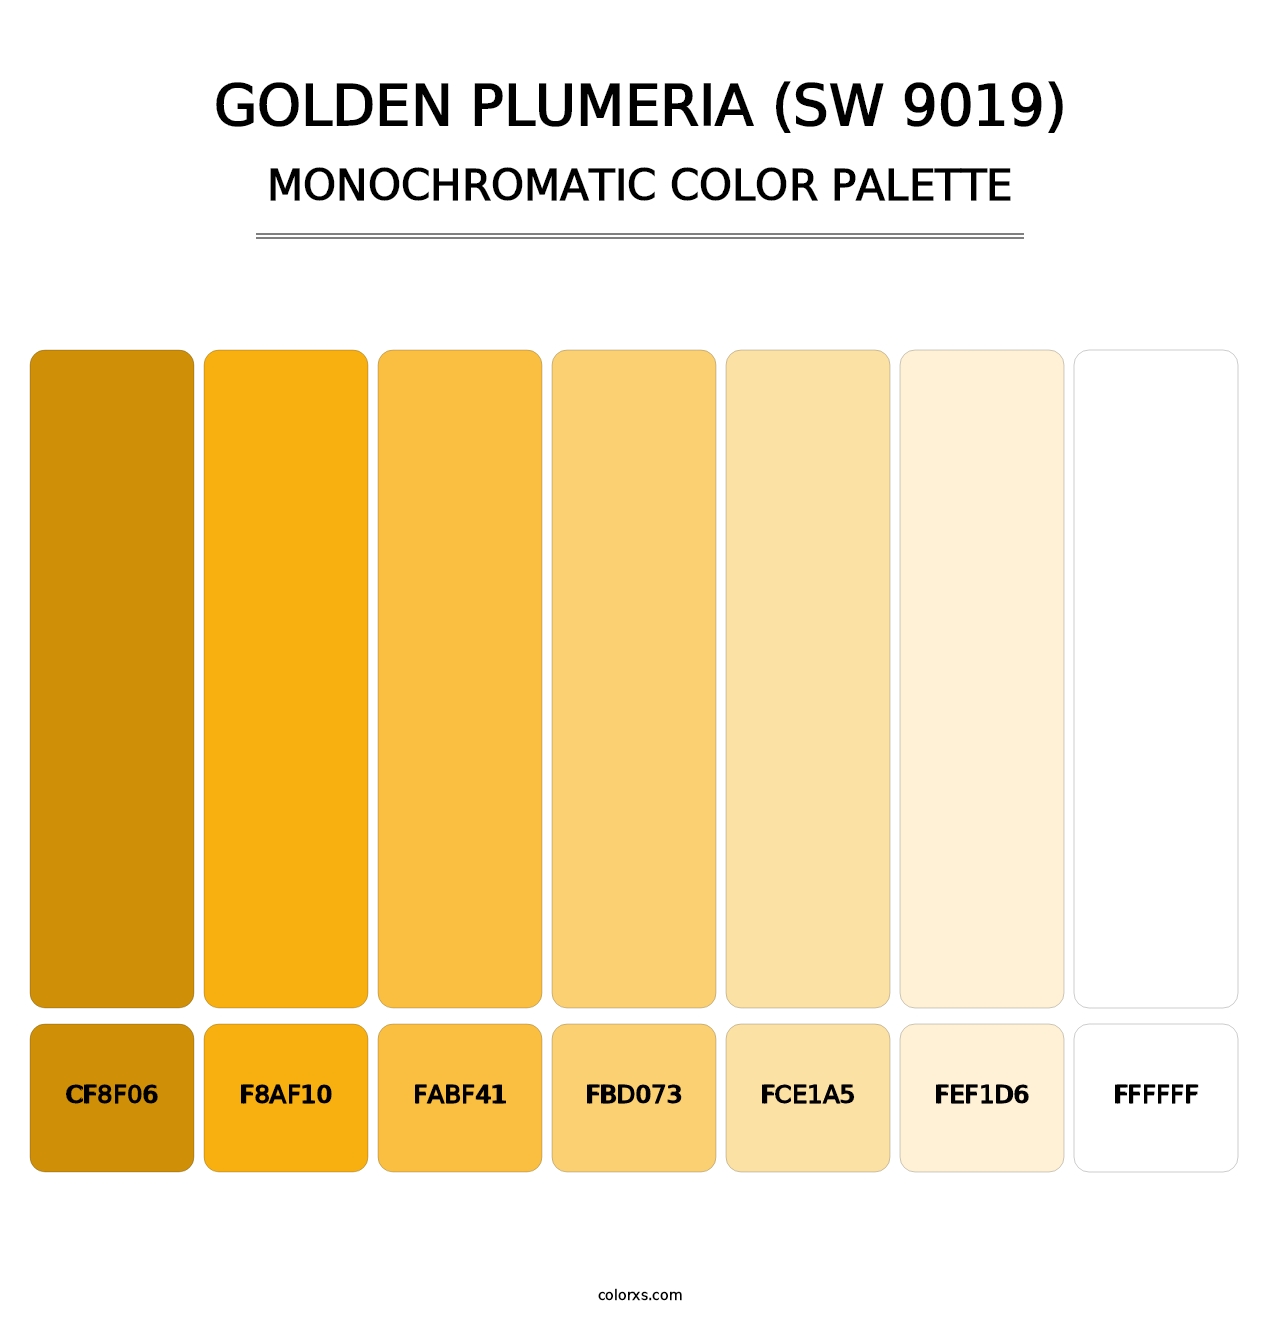 Golden Plumeria (SW 9019) - Monochromatic Color Palette